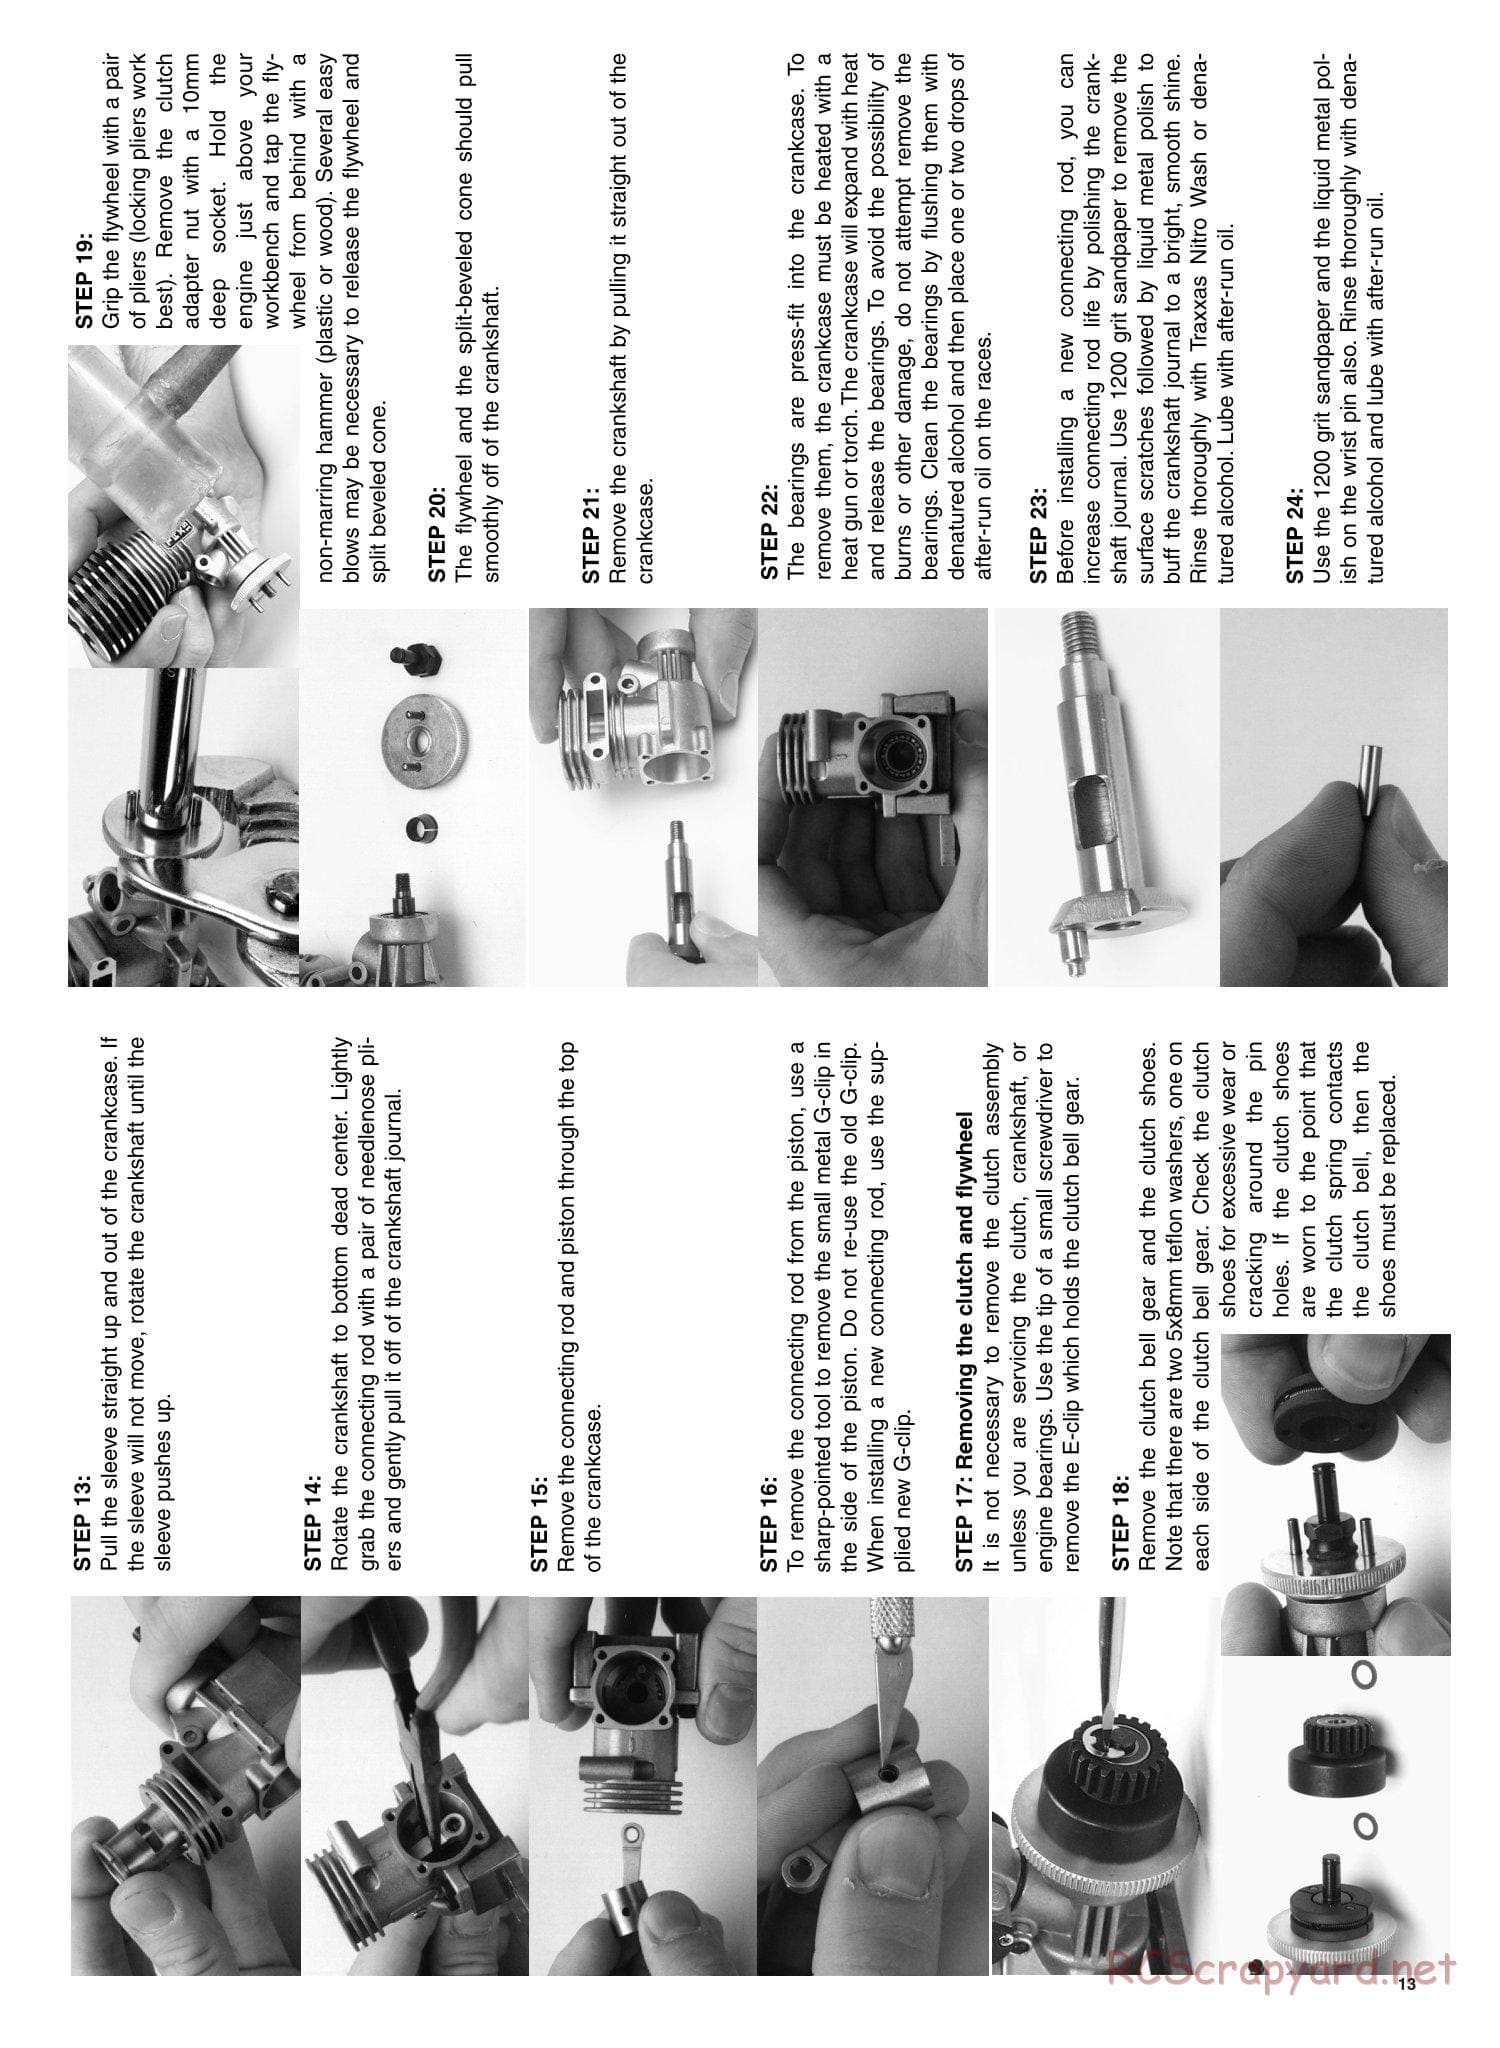 Traxxas - Nitro Rustler - Manual - Page 13